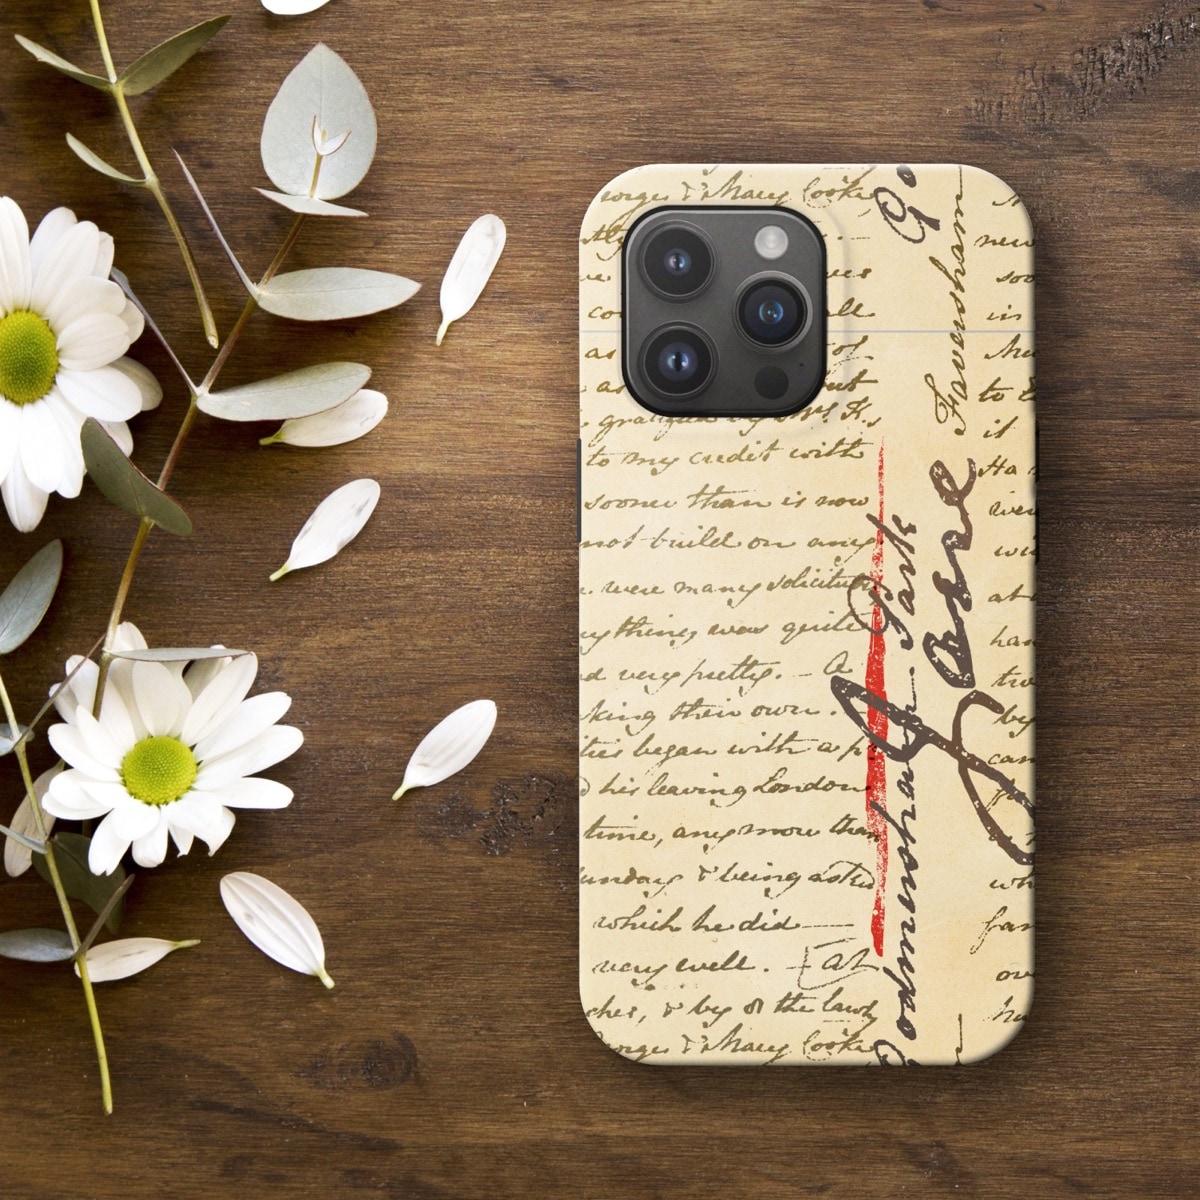 Jane Austen letter light iPhone case by Piotr Kowalczyk Geek Updated